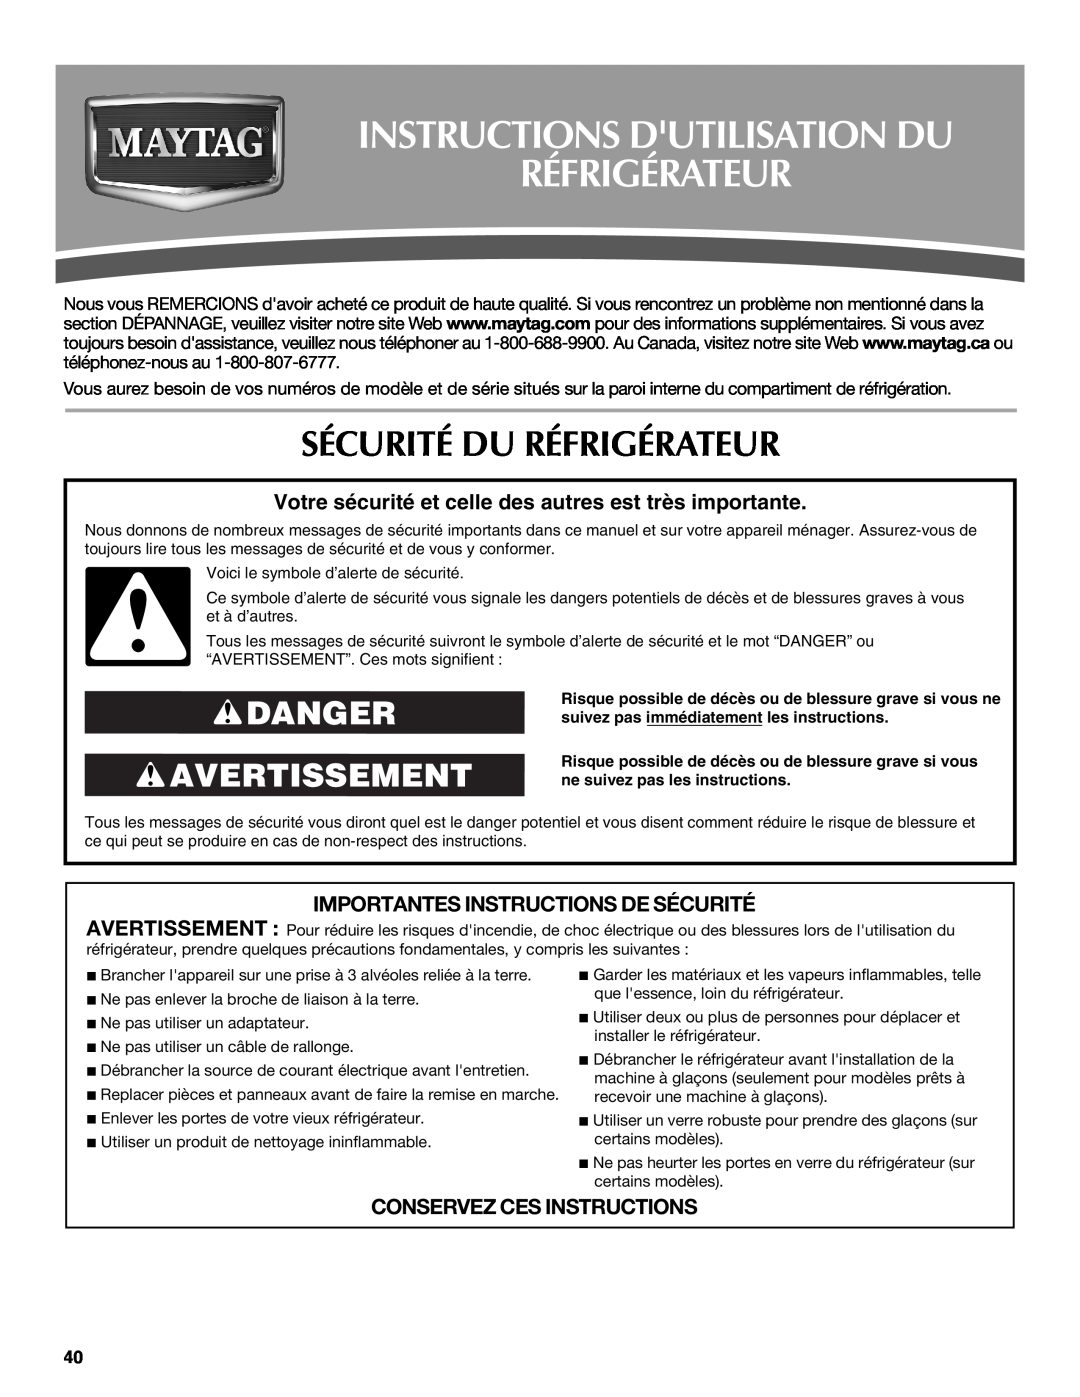 Maytag MFT2771WEM Instructions Dutilisation Du Réfrigérateur, Sécurité Du Réfrigérateur, Danger Avertissement 